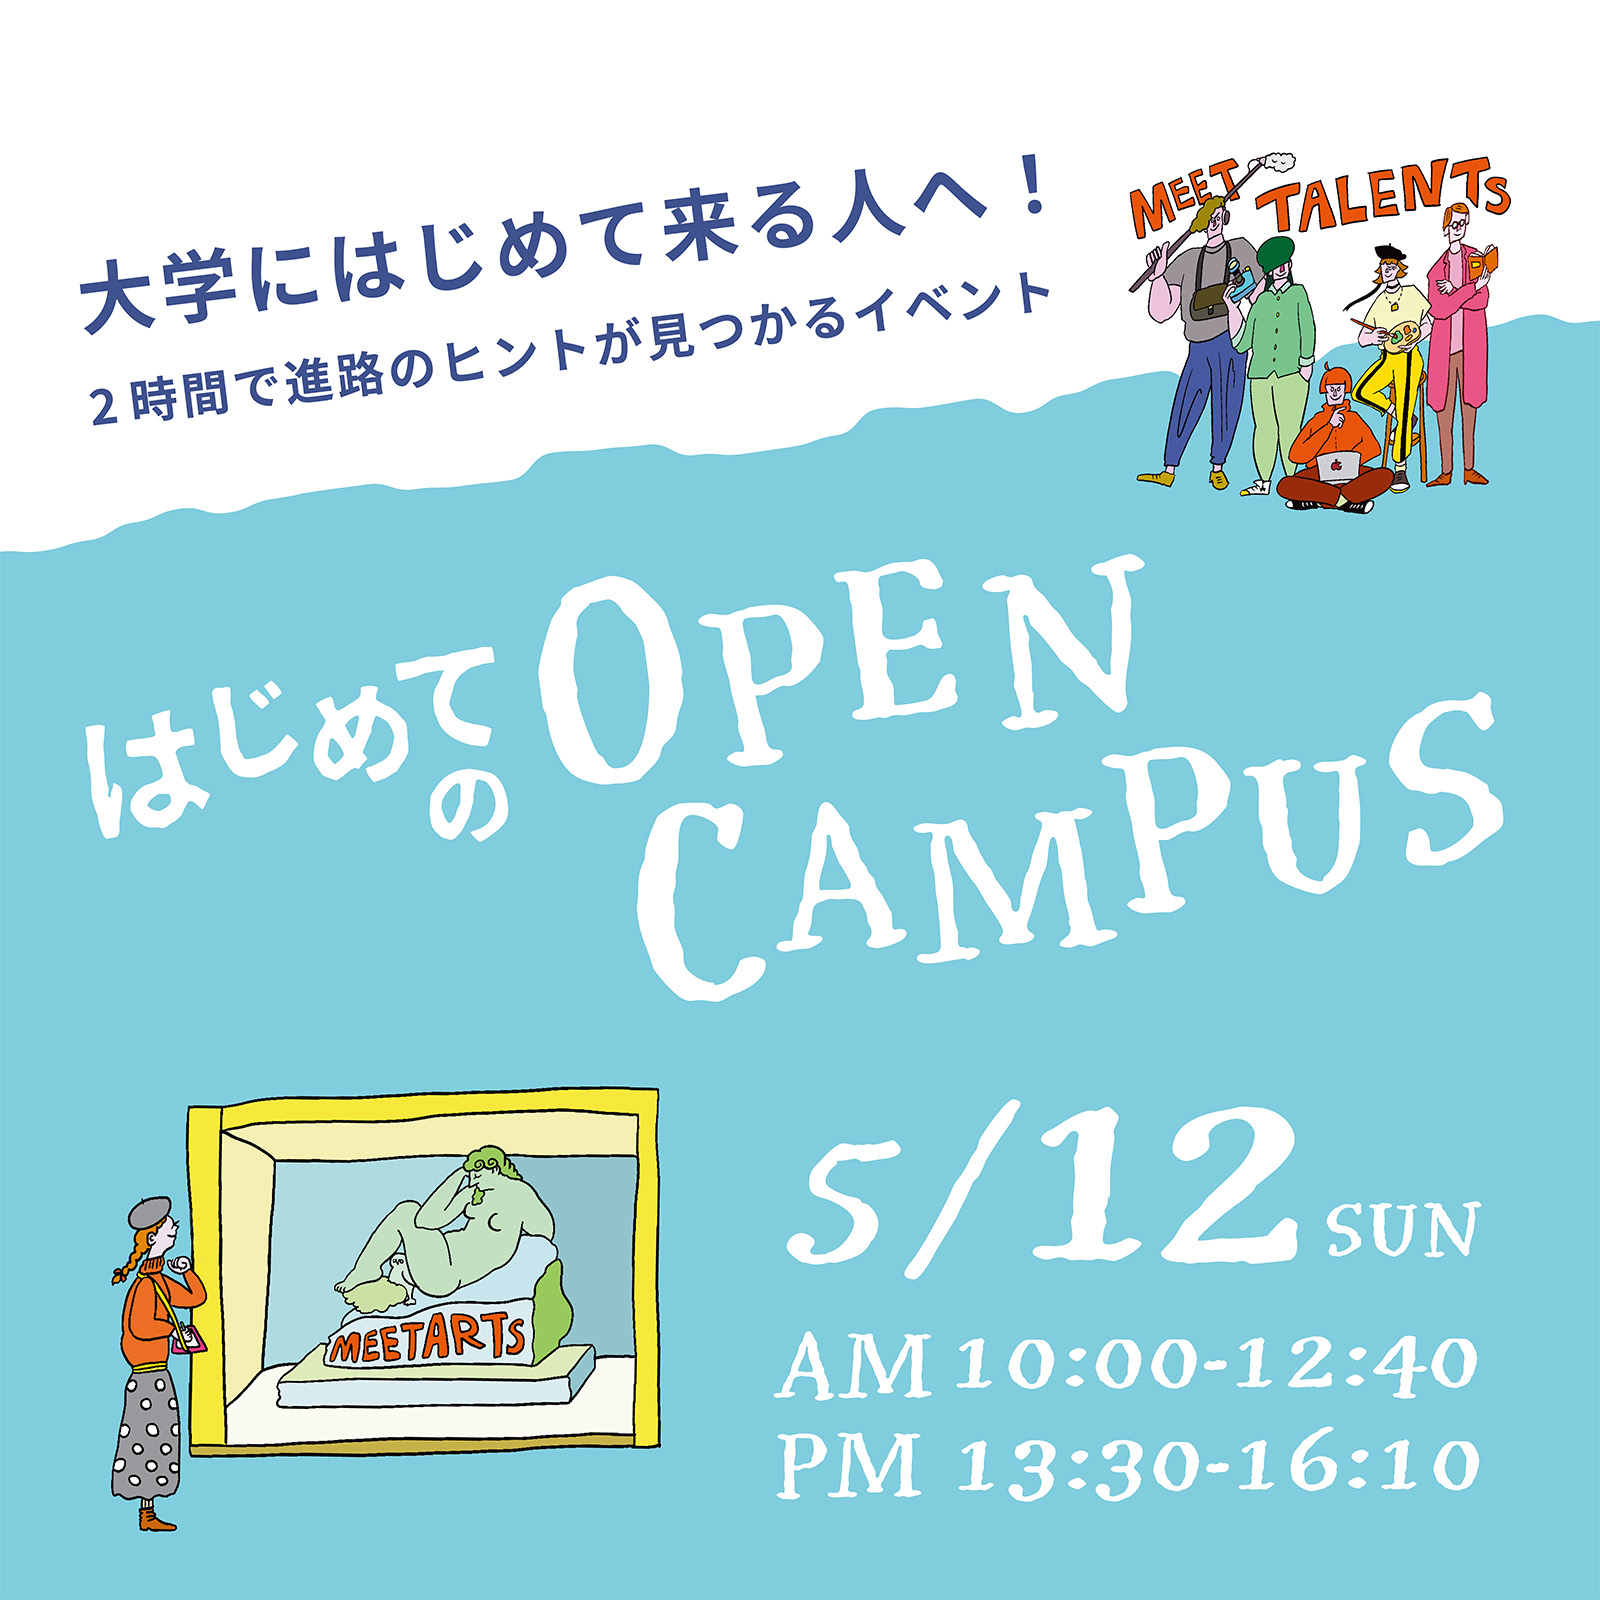 京都芸術大学のオープンキャンパス詳細